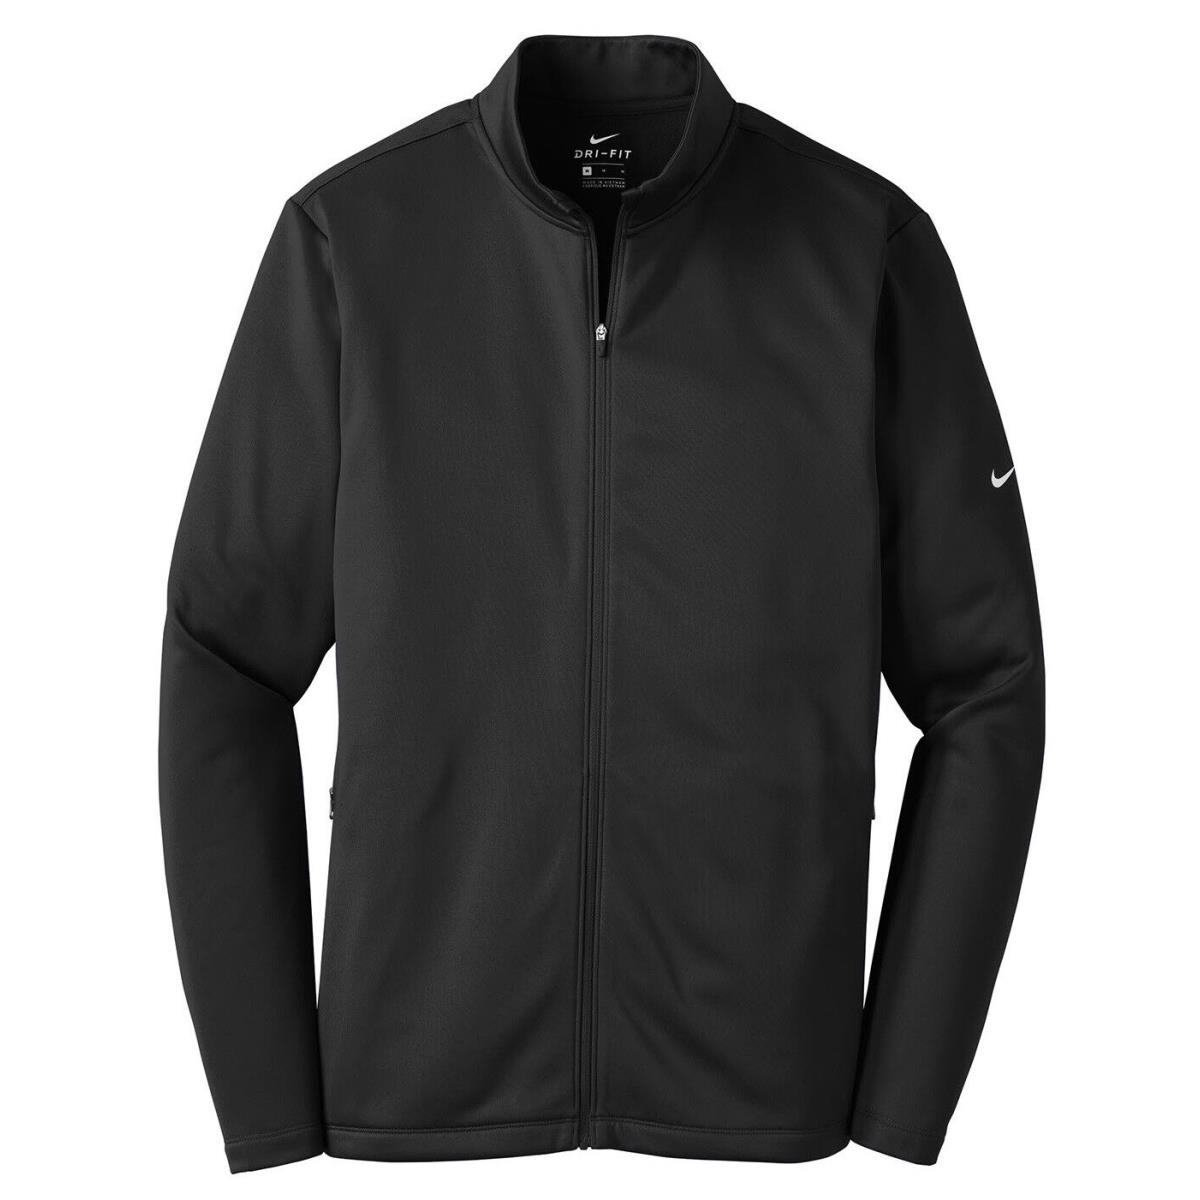 Men`s Nike Therma Fit Moisture Wicking Fleece Full Fip Jacket Pockets. XS-4XL Black